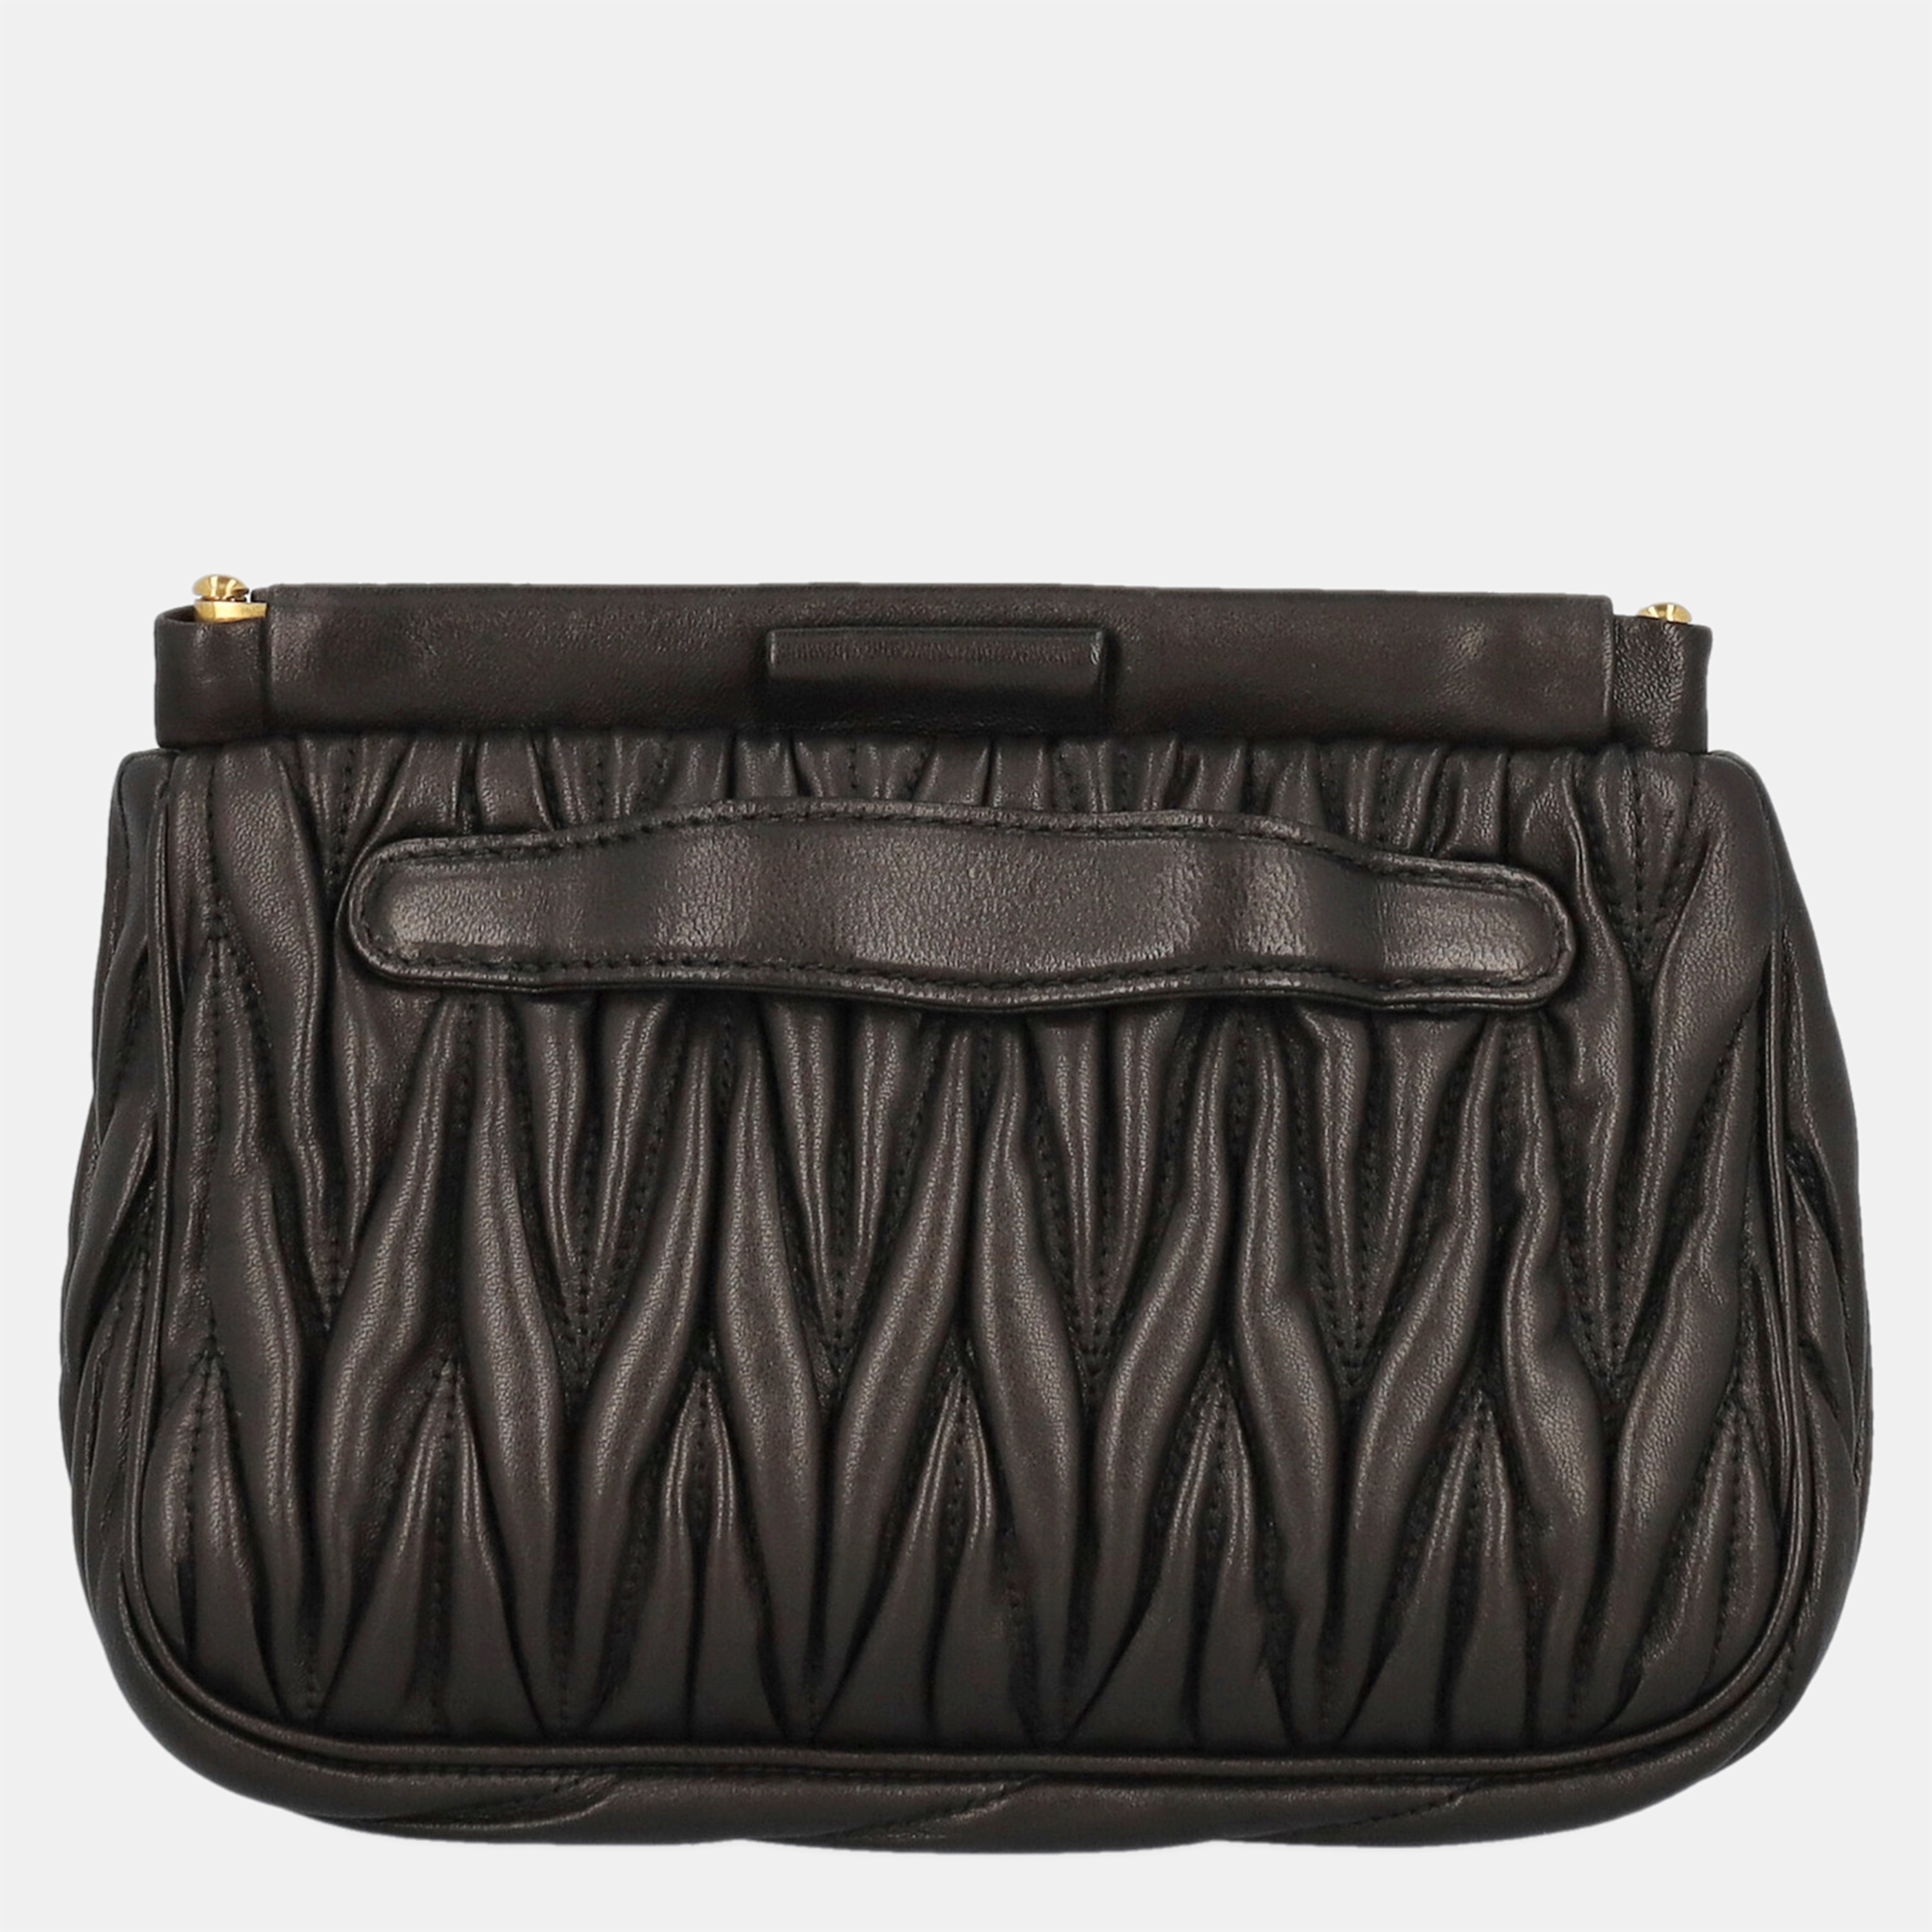 Miu Miu  Women's Leather Clutch Bag - Black - One Size